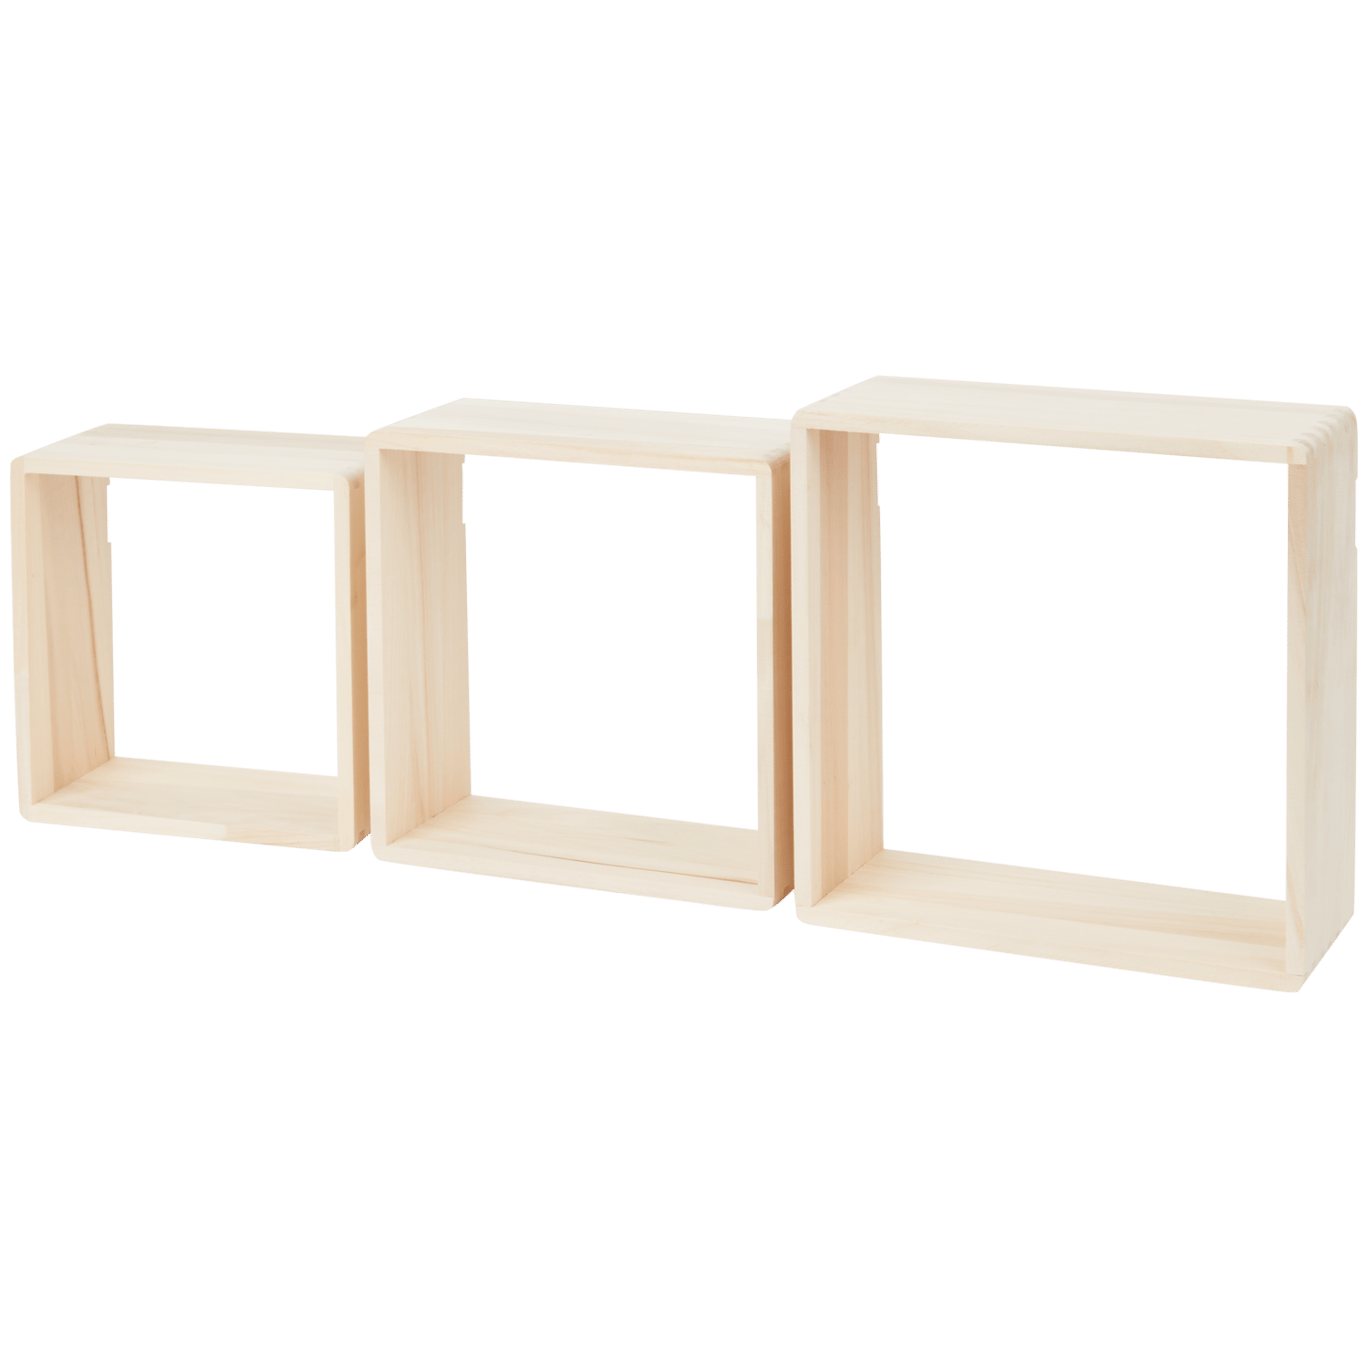 Home Accents houten wandboxen